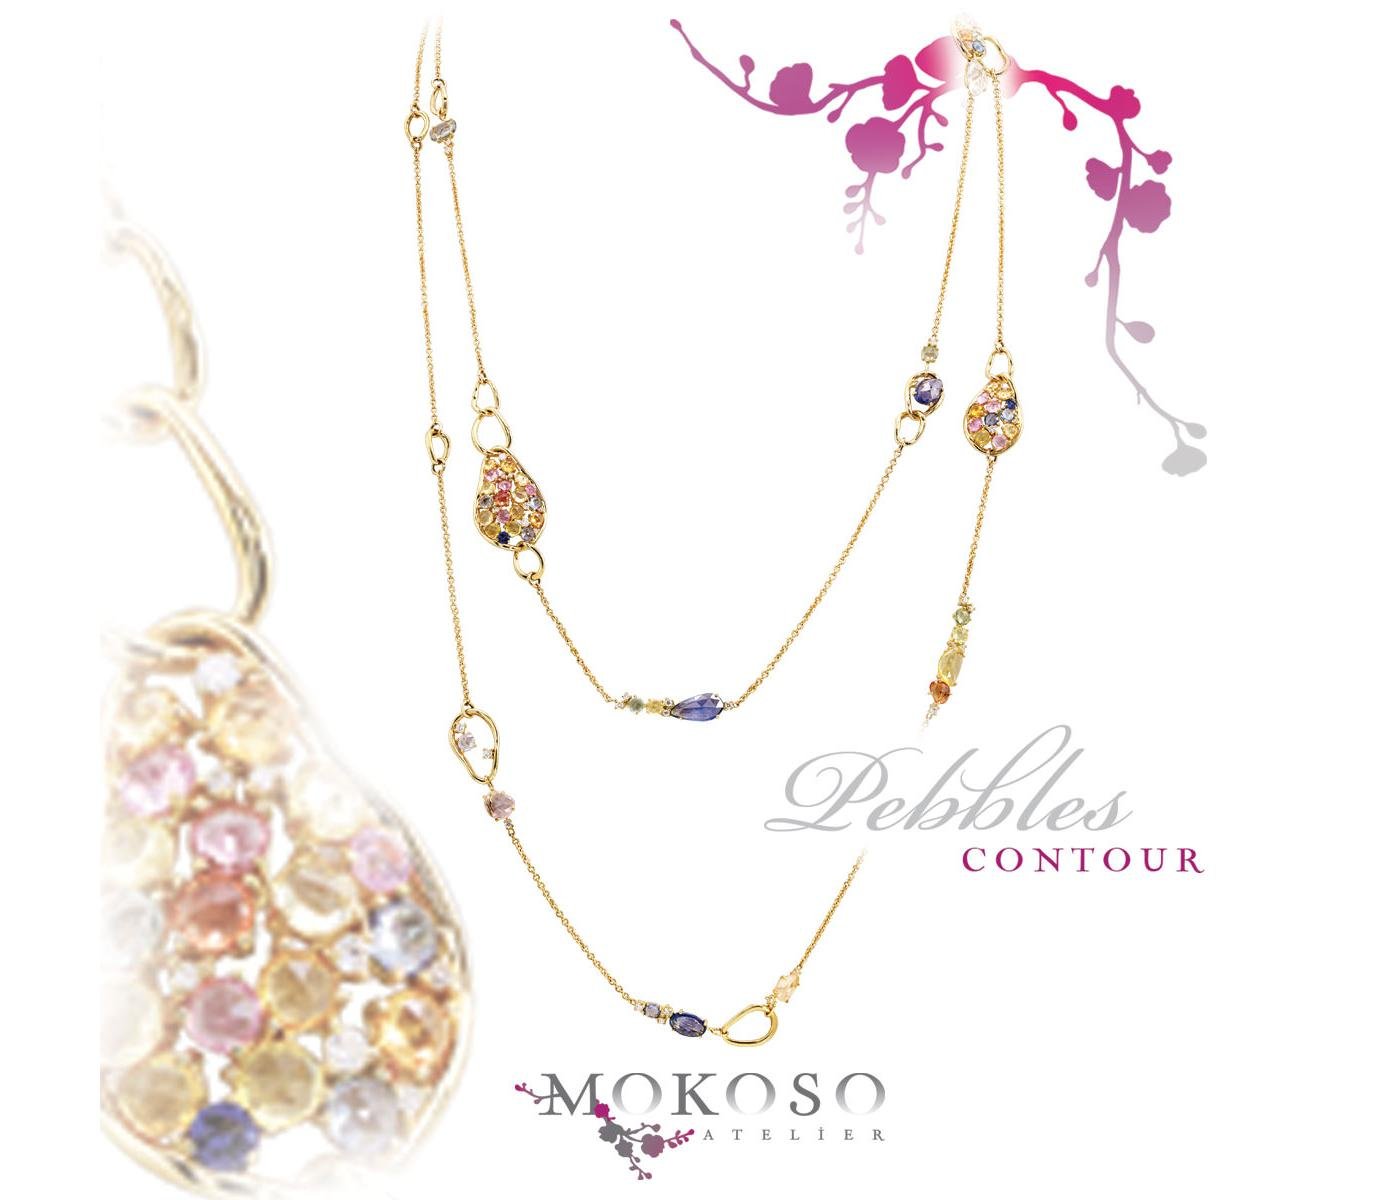 Necklace by Mokoso Atelier